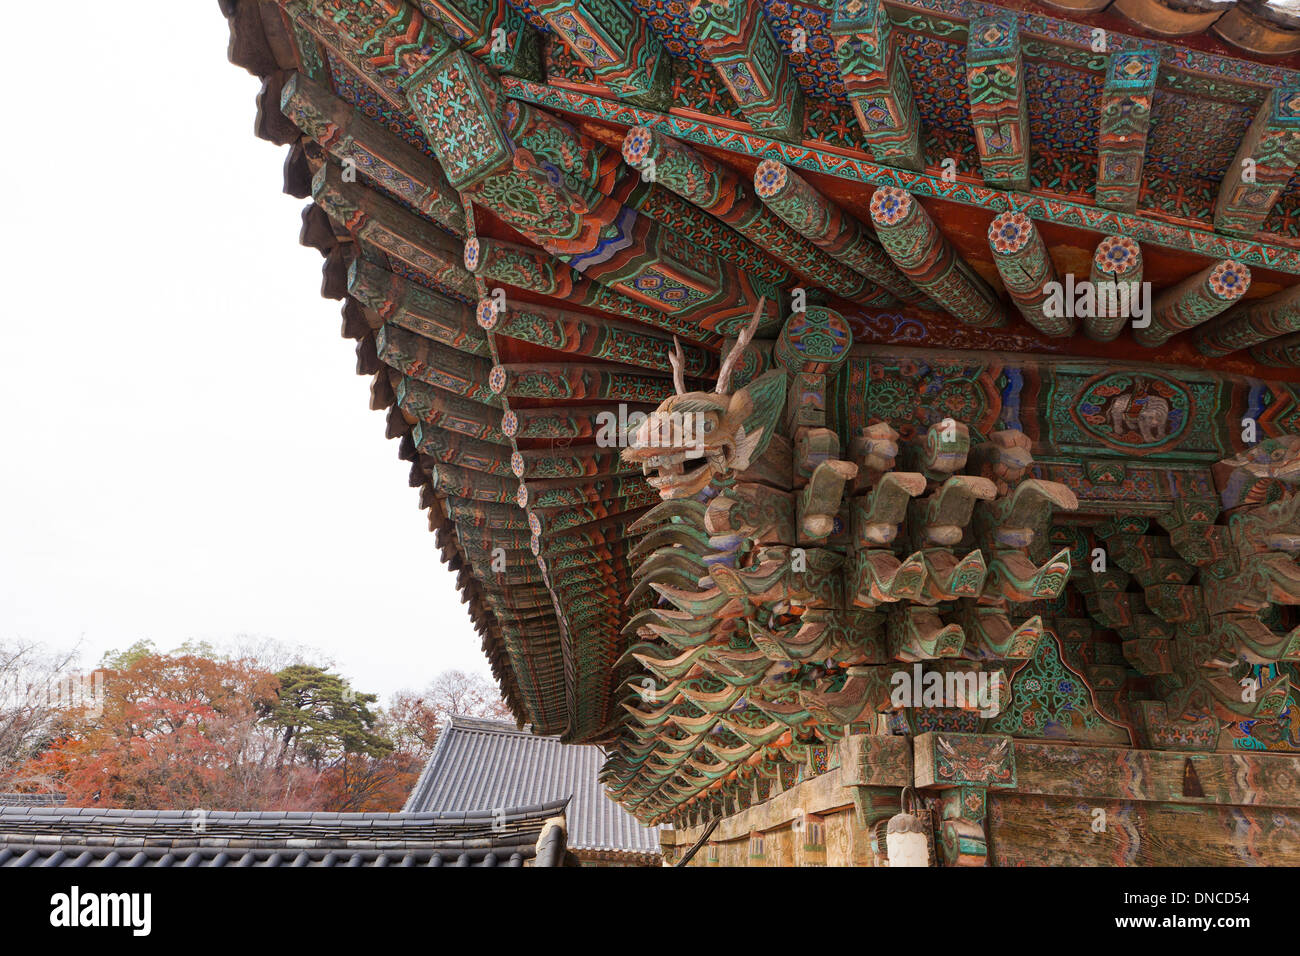 Dans l'architecture traditionnel en bois style Hanok - Gyeongju, Corée du Sud Banque D'Images